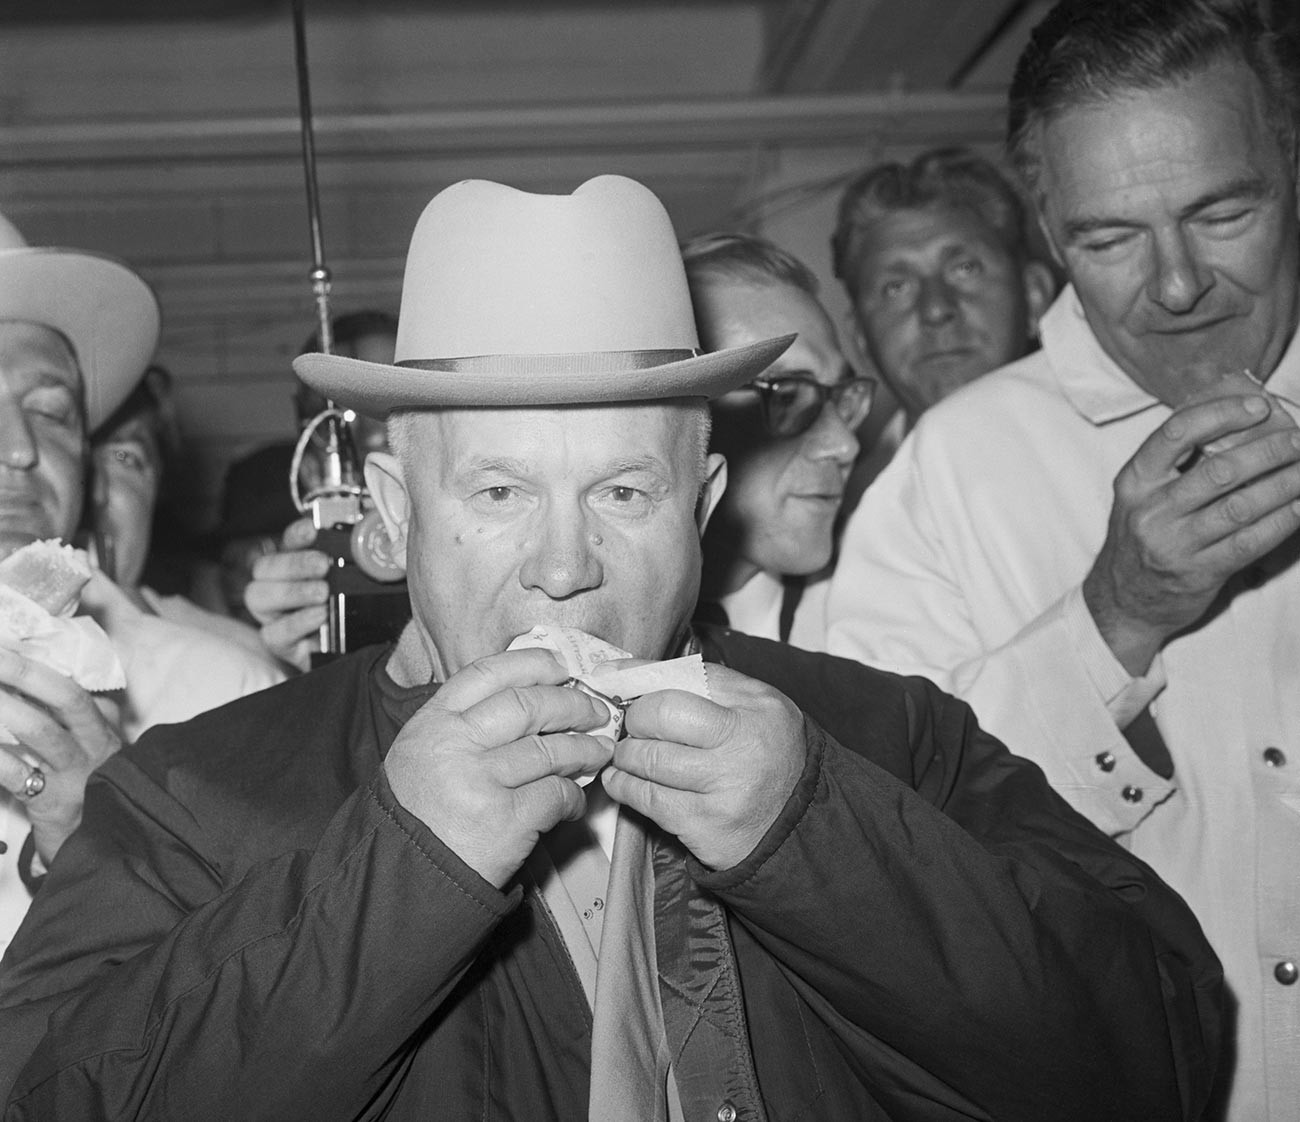 Hruščov prvič poskusil ameriški hot dog z gorčico. Ko je pojedel, so ga vprašali, kakšno je njegovo mnenje, on pa je odgovoril. »Ok, odlično, izjemno,« a je dodal, da porcija ni bila dovolj velika.

